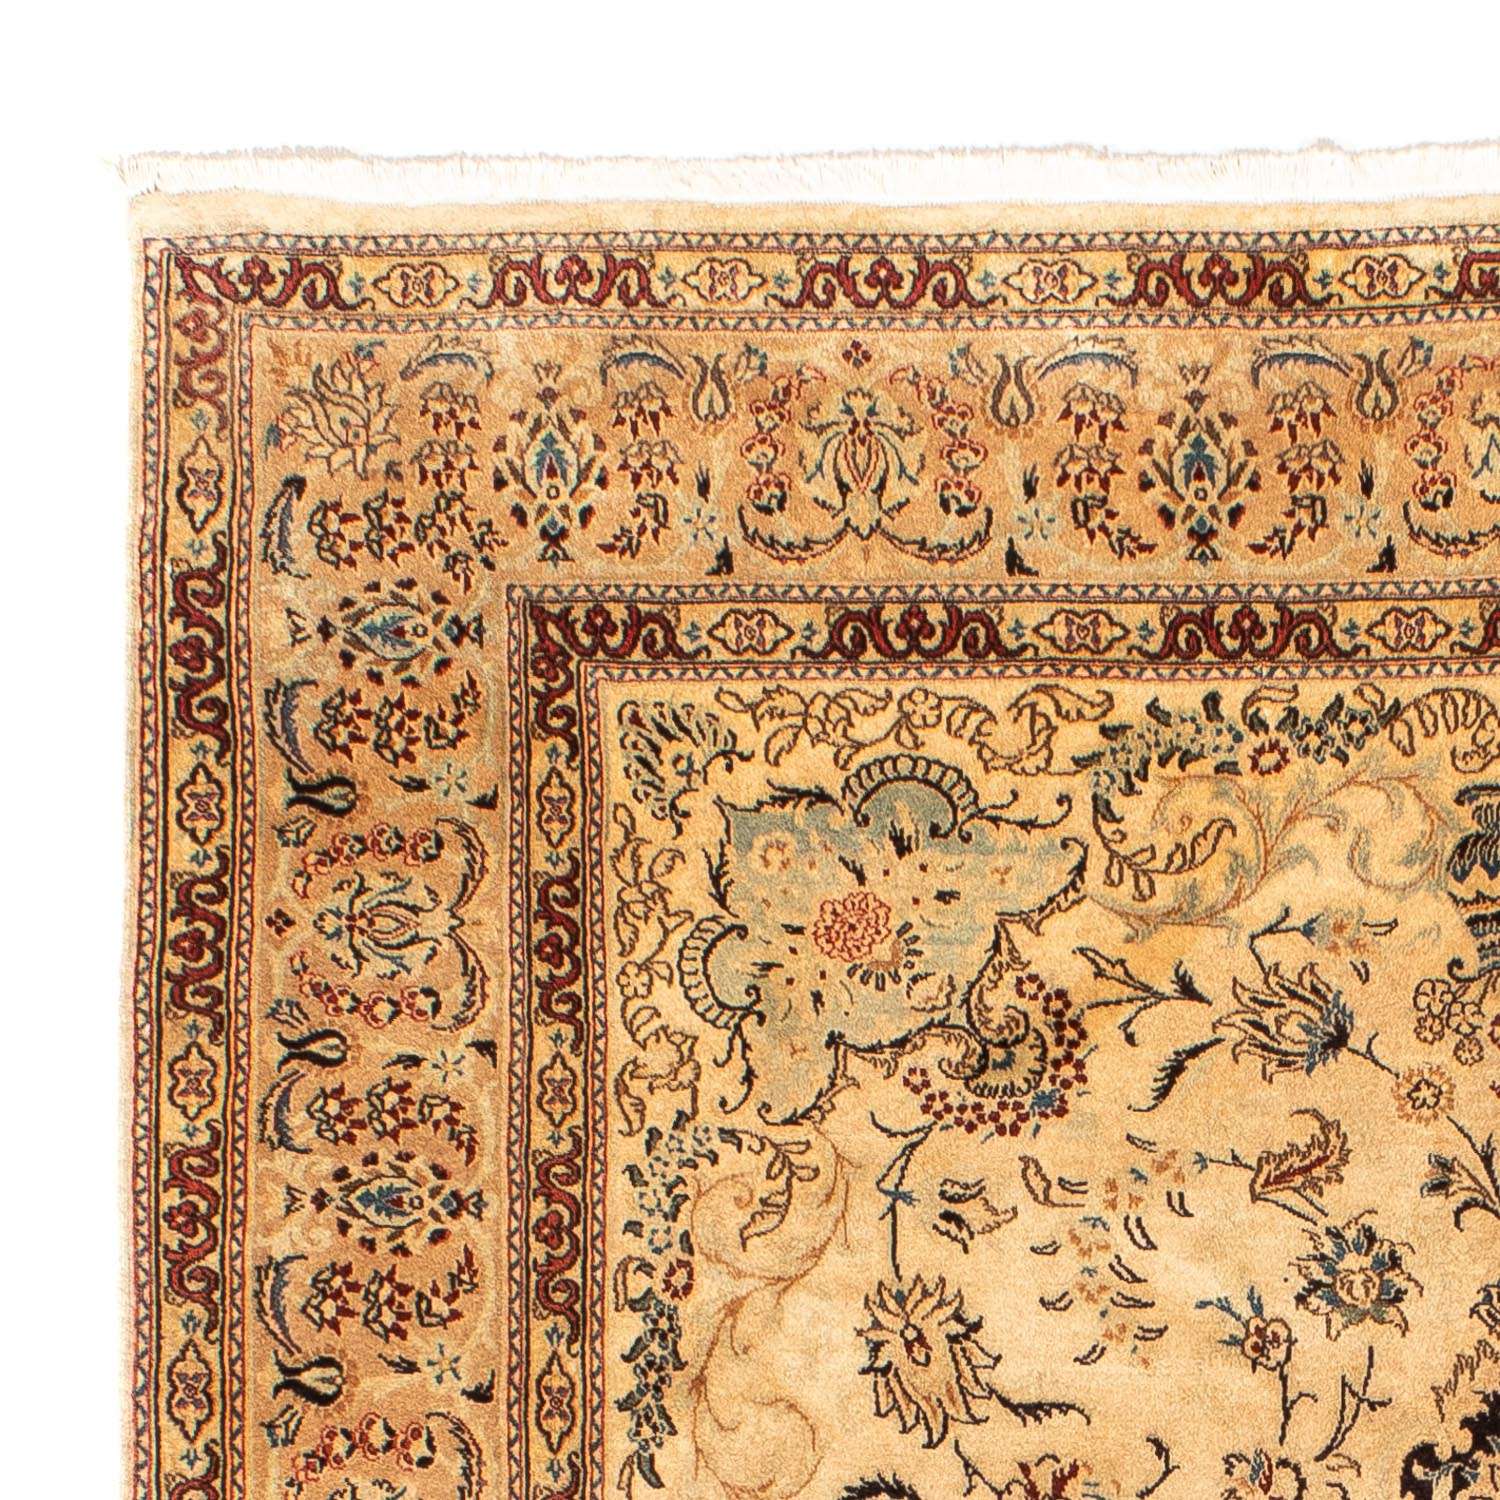 Persisk teppe - klassisk - 295 x 198 cm - lys beige